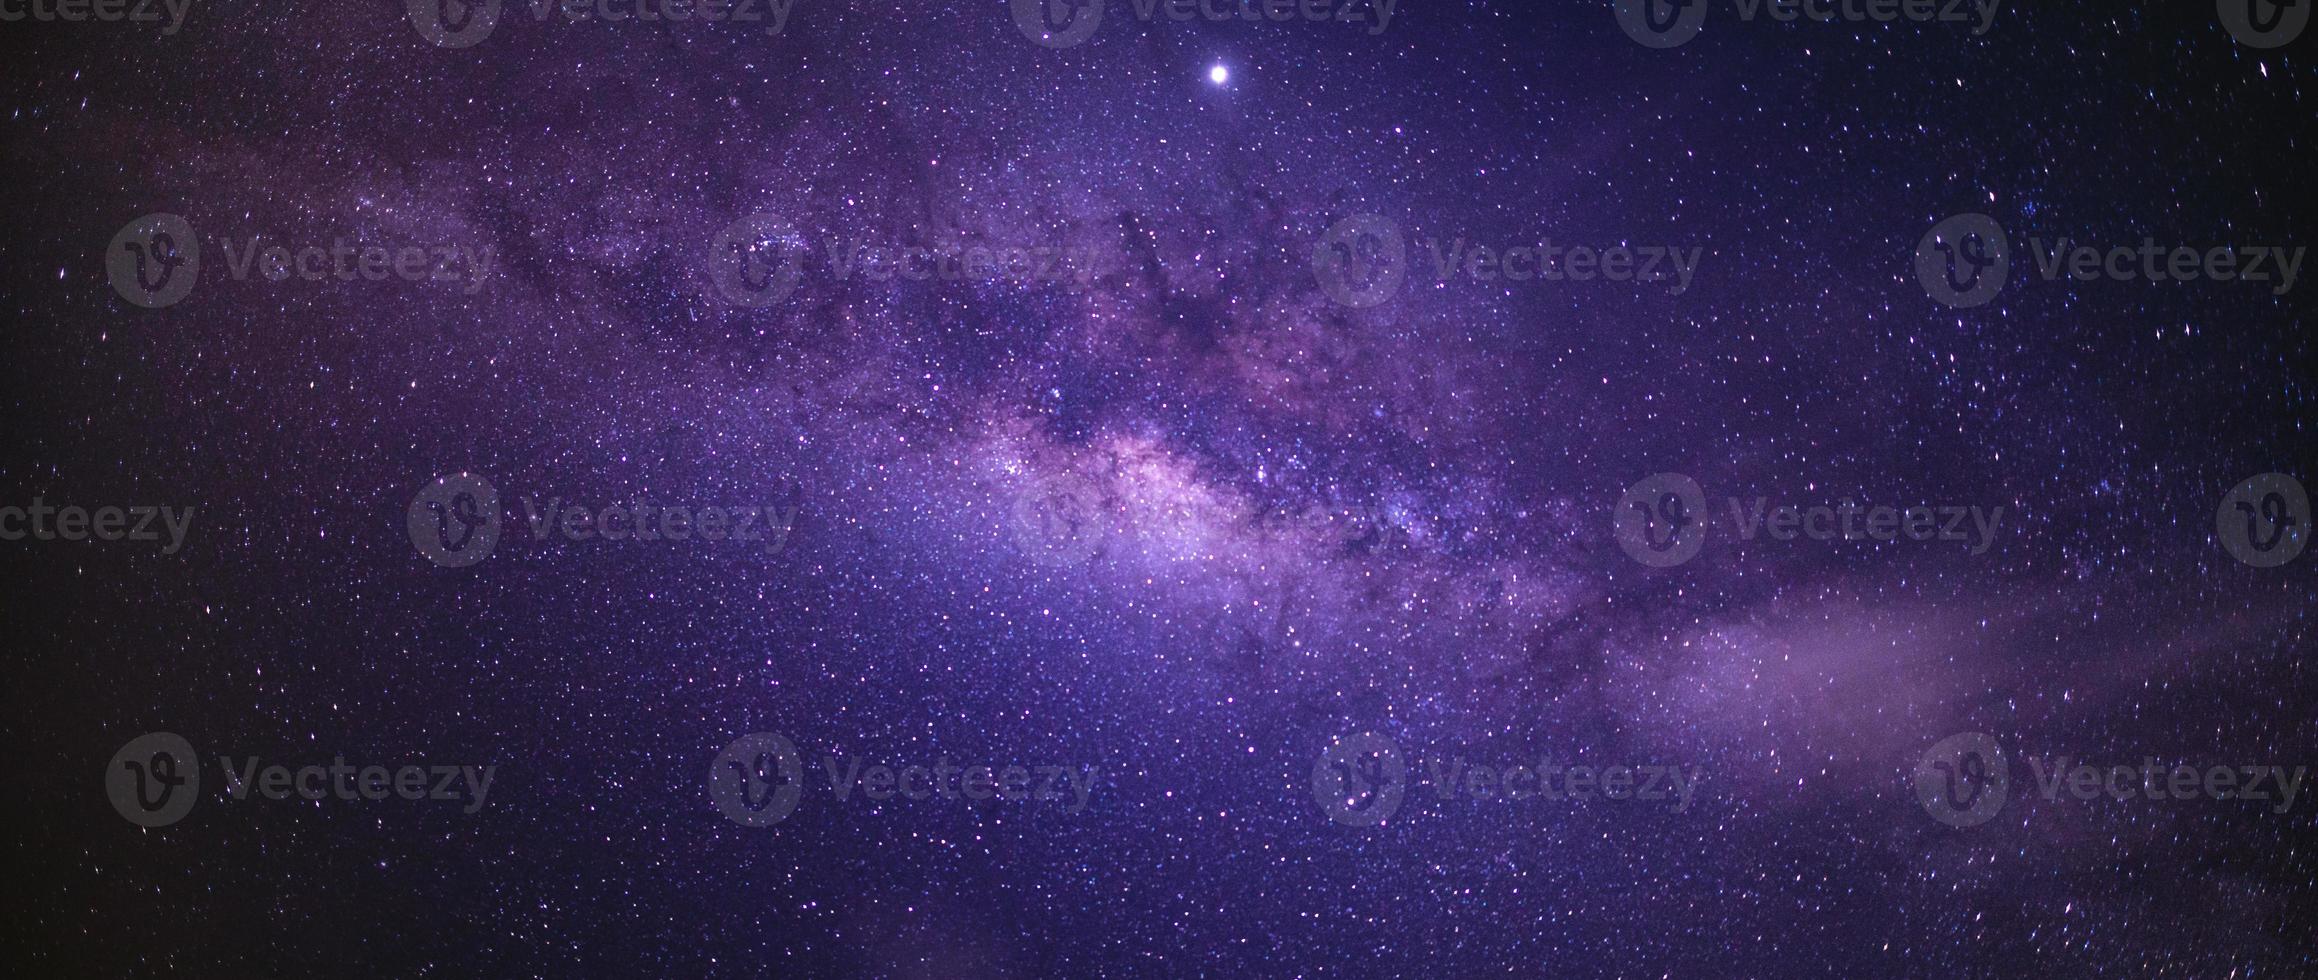 landschap met melkwegstelsel. nachtelijke hemel met sterren. foto